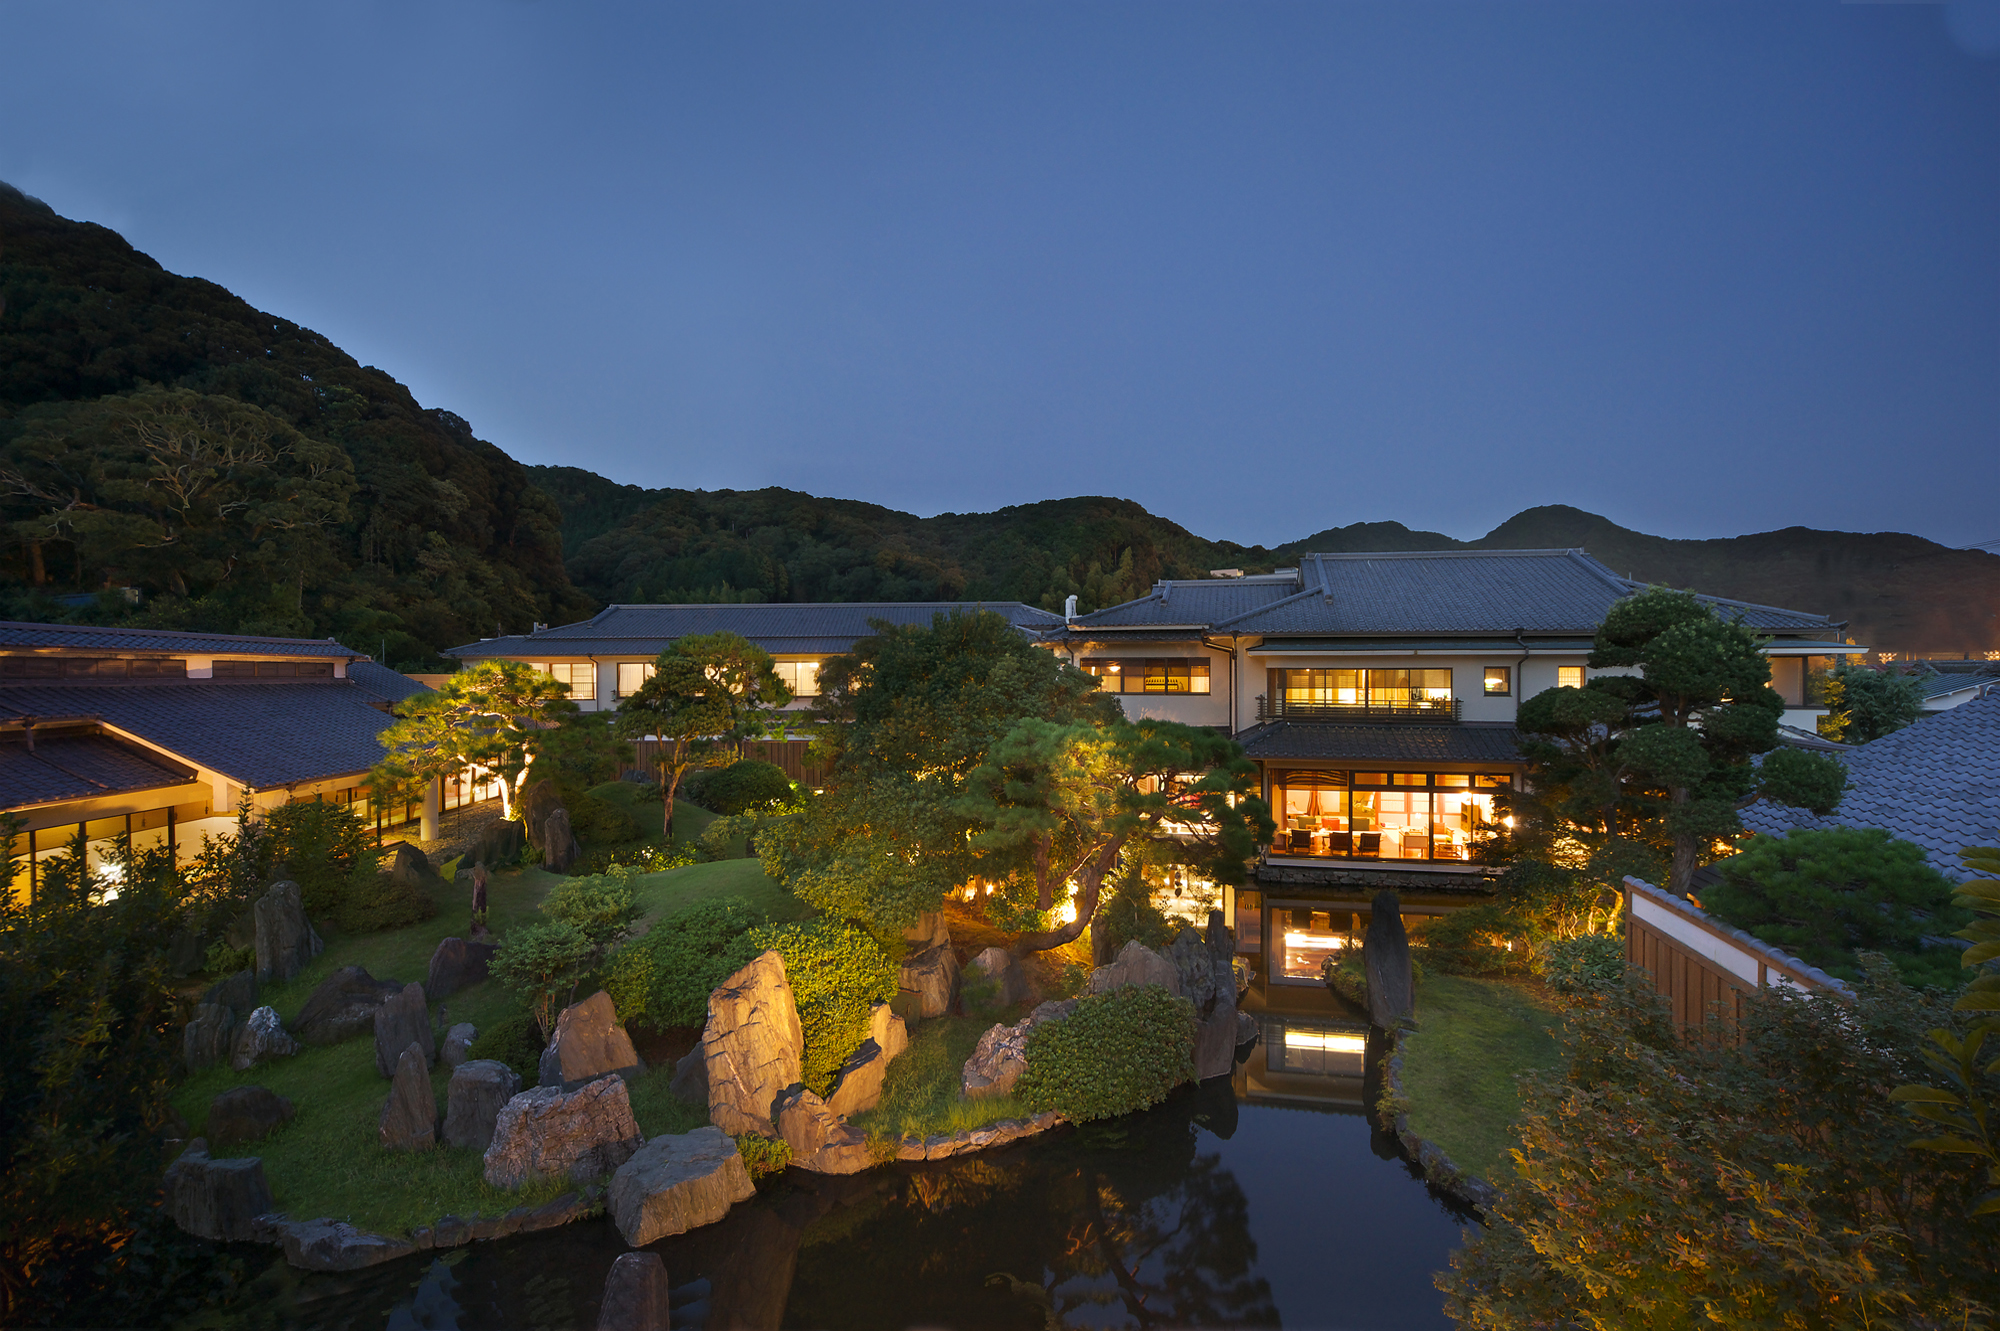 建物外観と中央の日本庭園